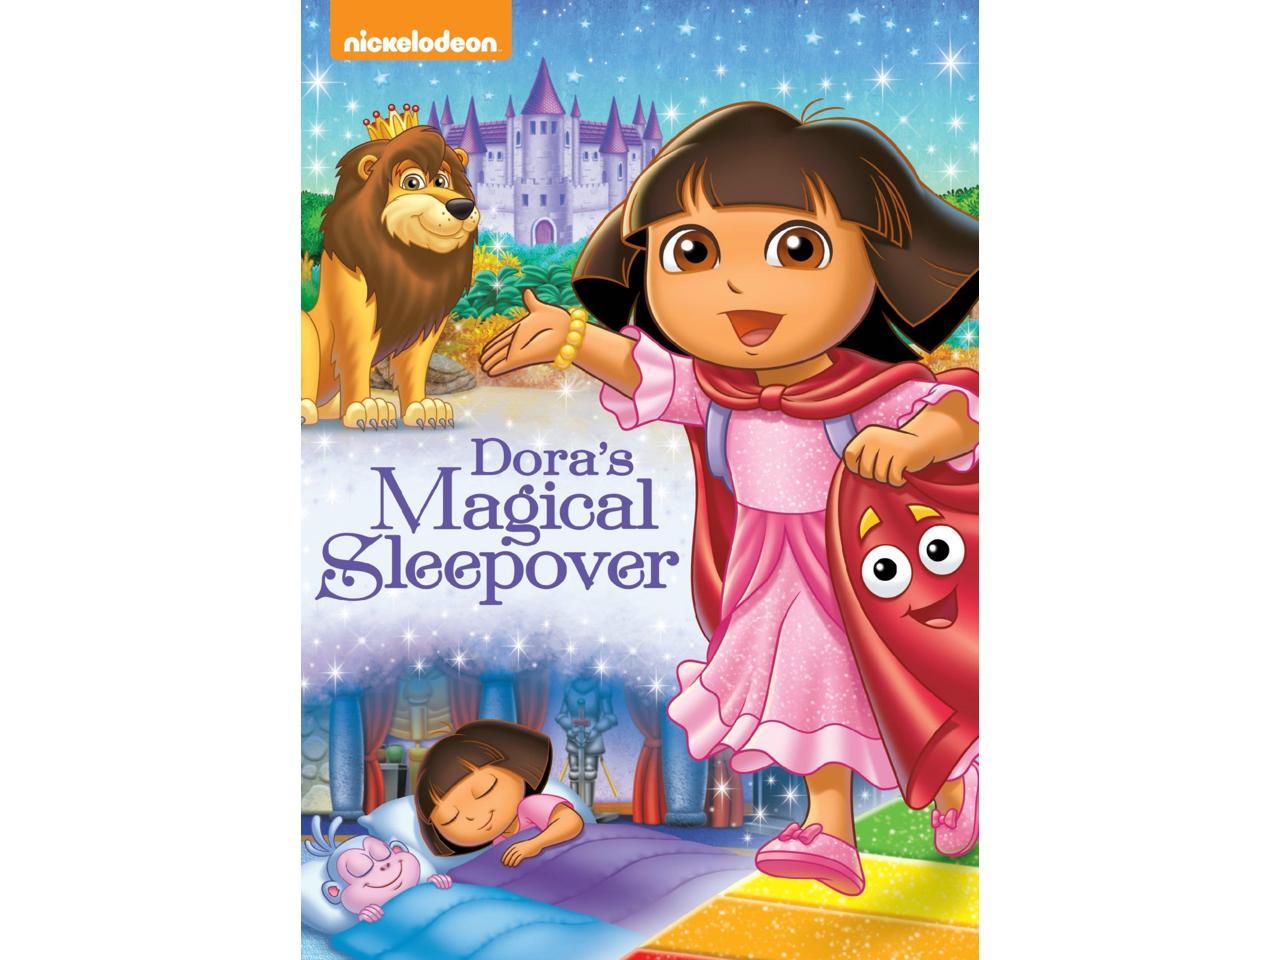 Dora The Explorer Doras Magical Sleepover Available On Dvd My Xxx Hot Girl